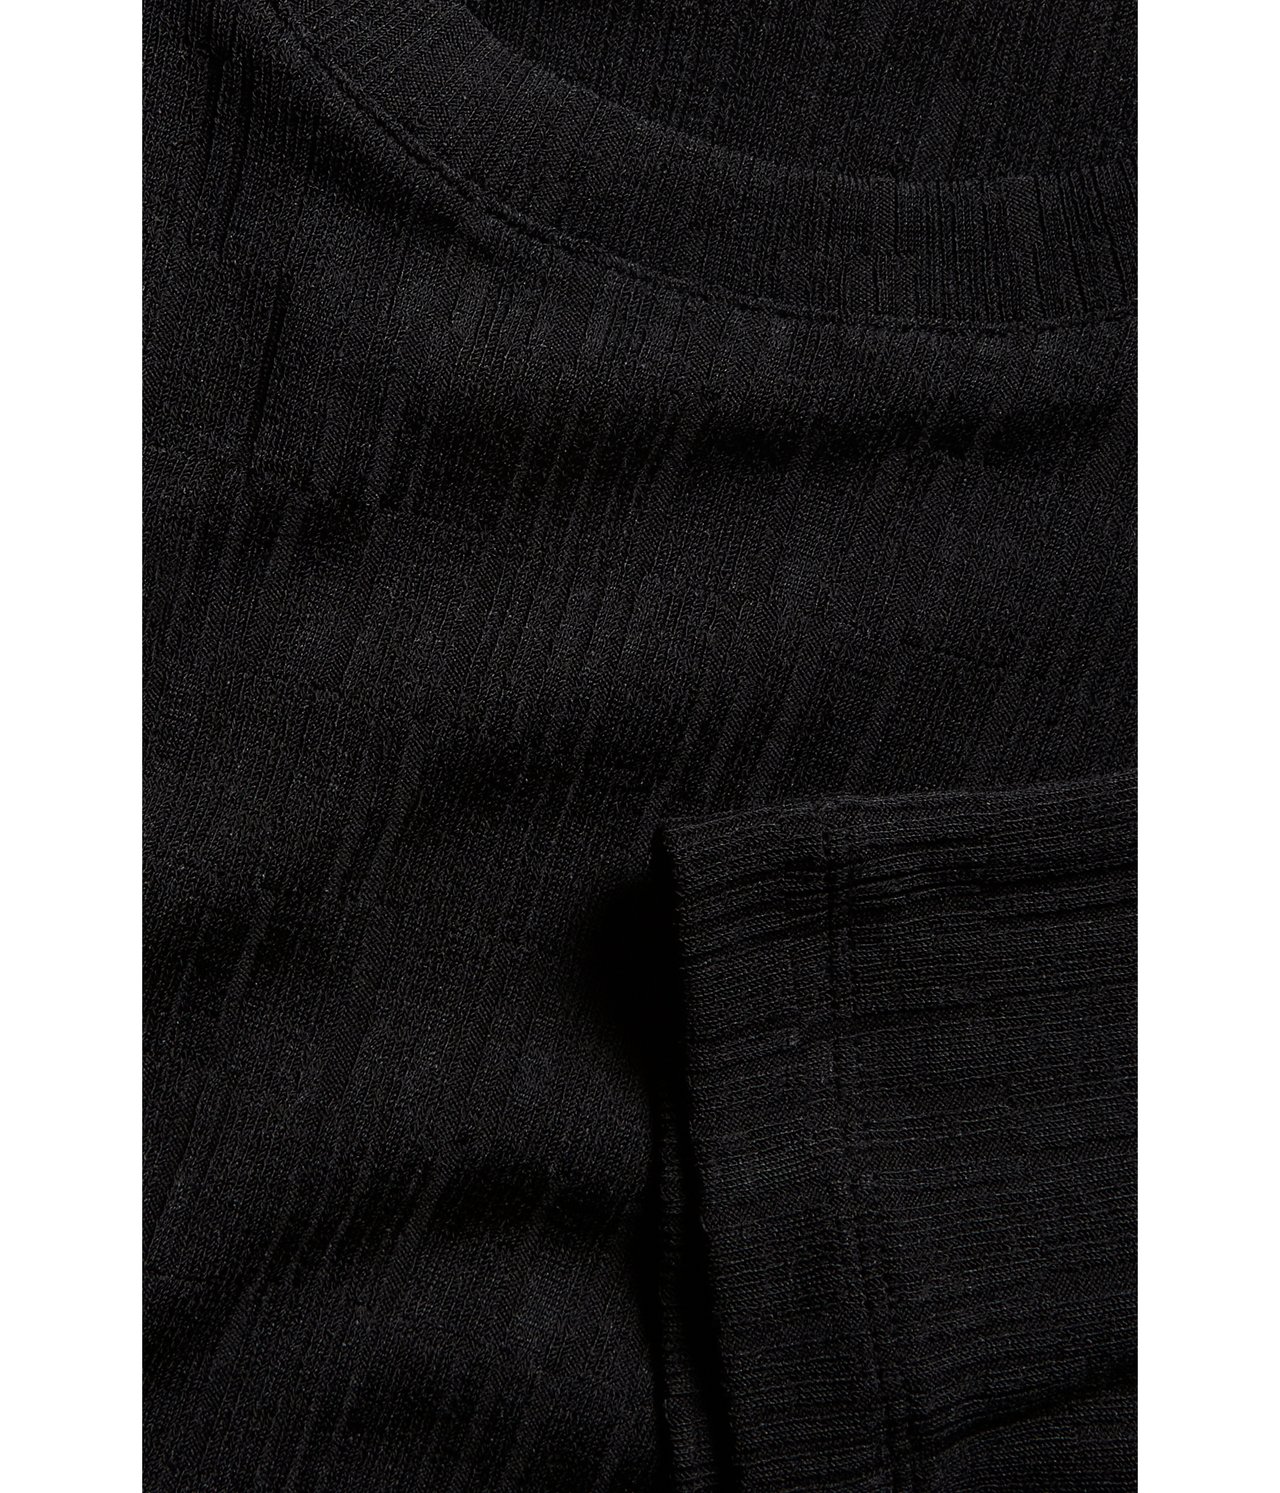 Lyhyemmän mallinen paita Musta - null - 6